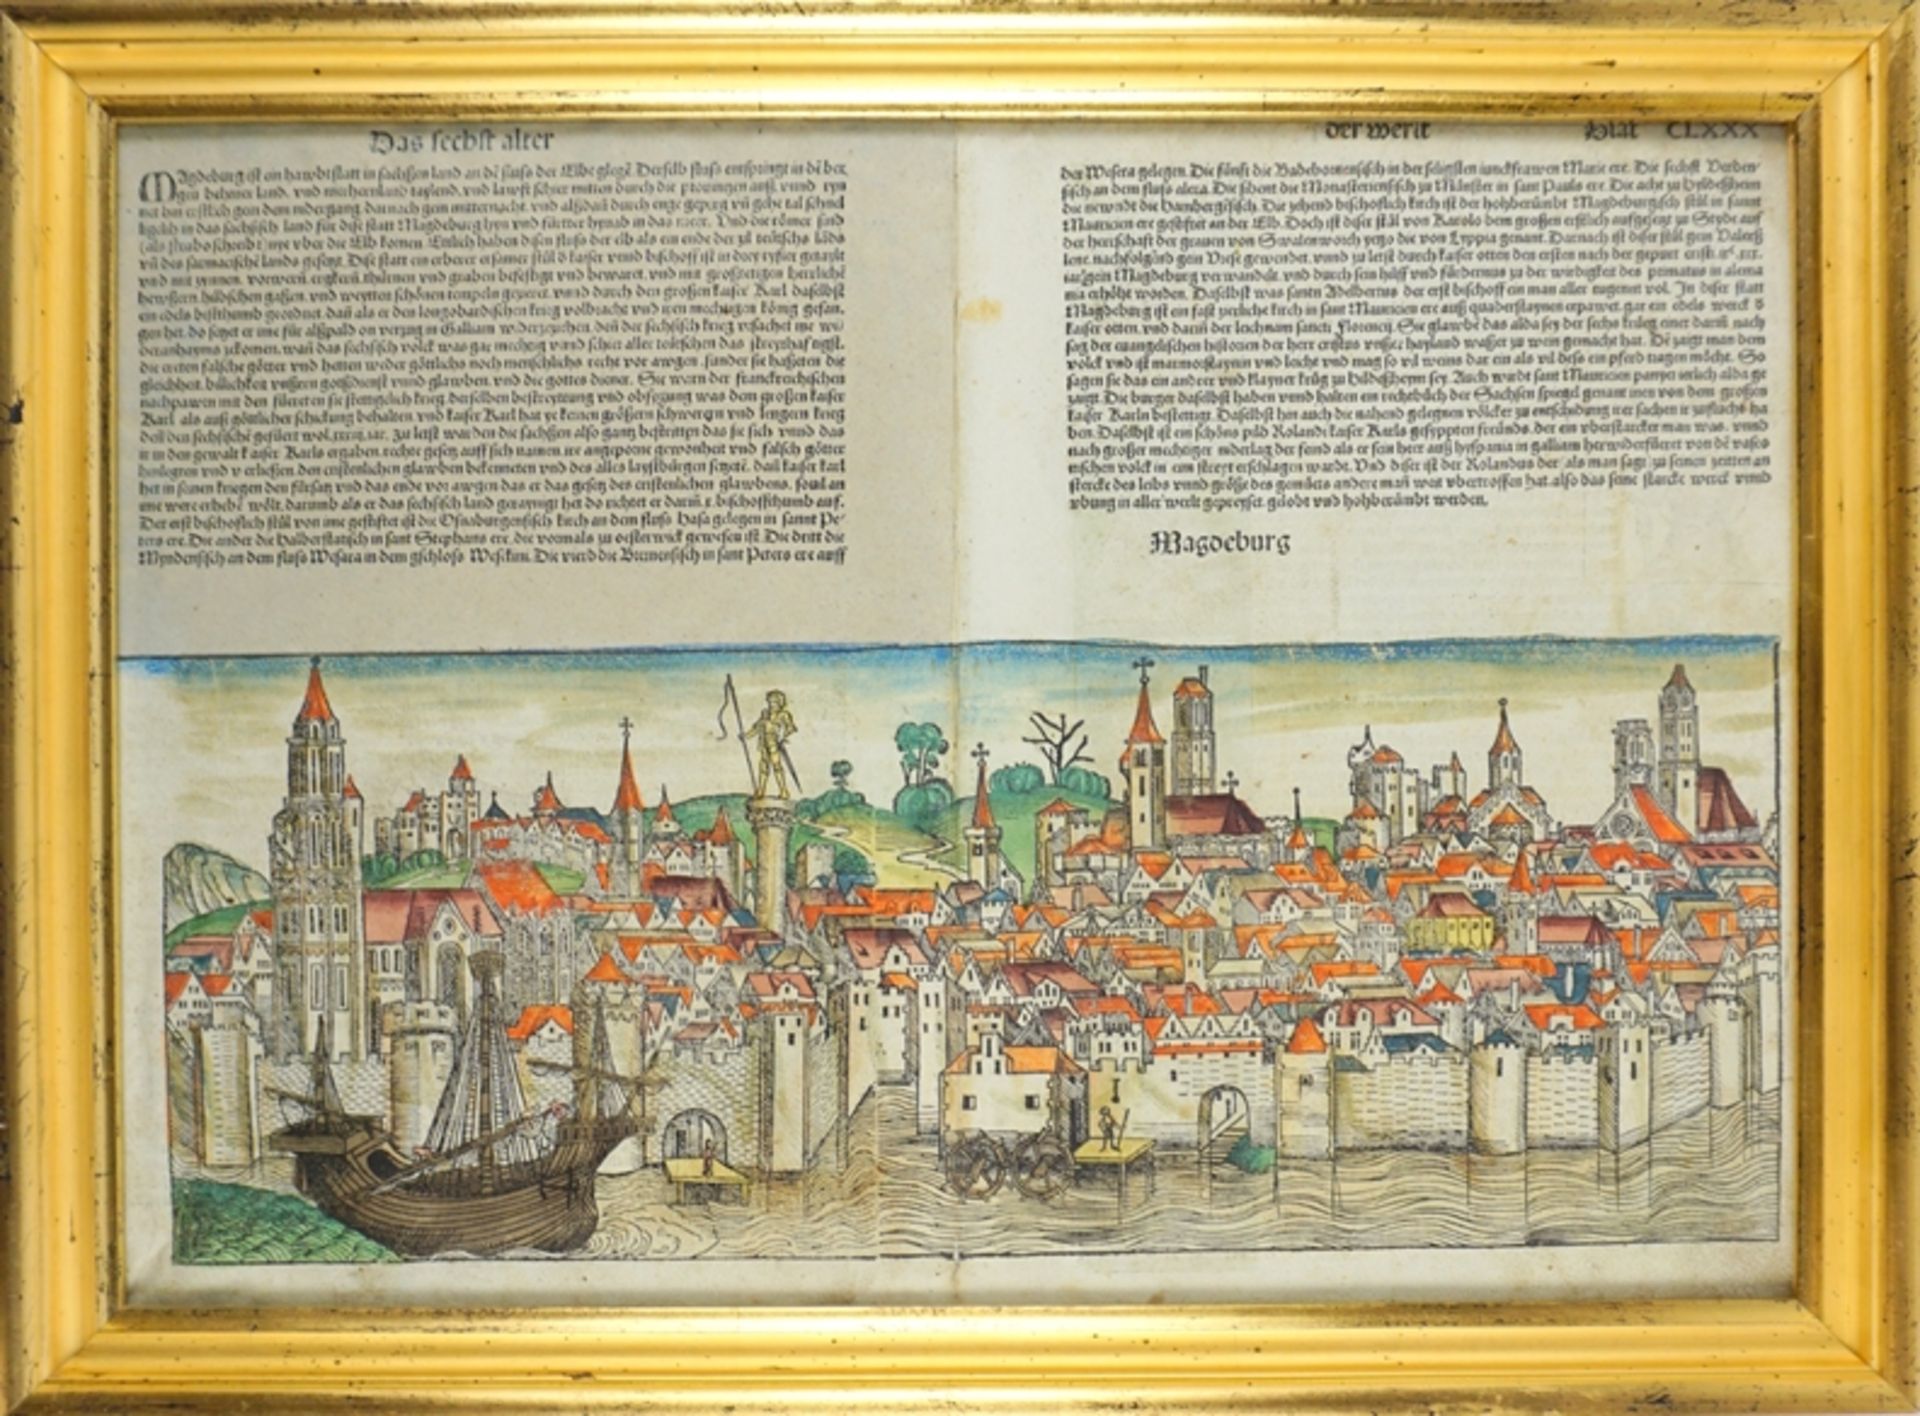 Hartmann Schedel (1440, Nürnberg - 1514, ebd.), "Magdeburg", aus Schedelscher Weltchronic, 1493, ko